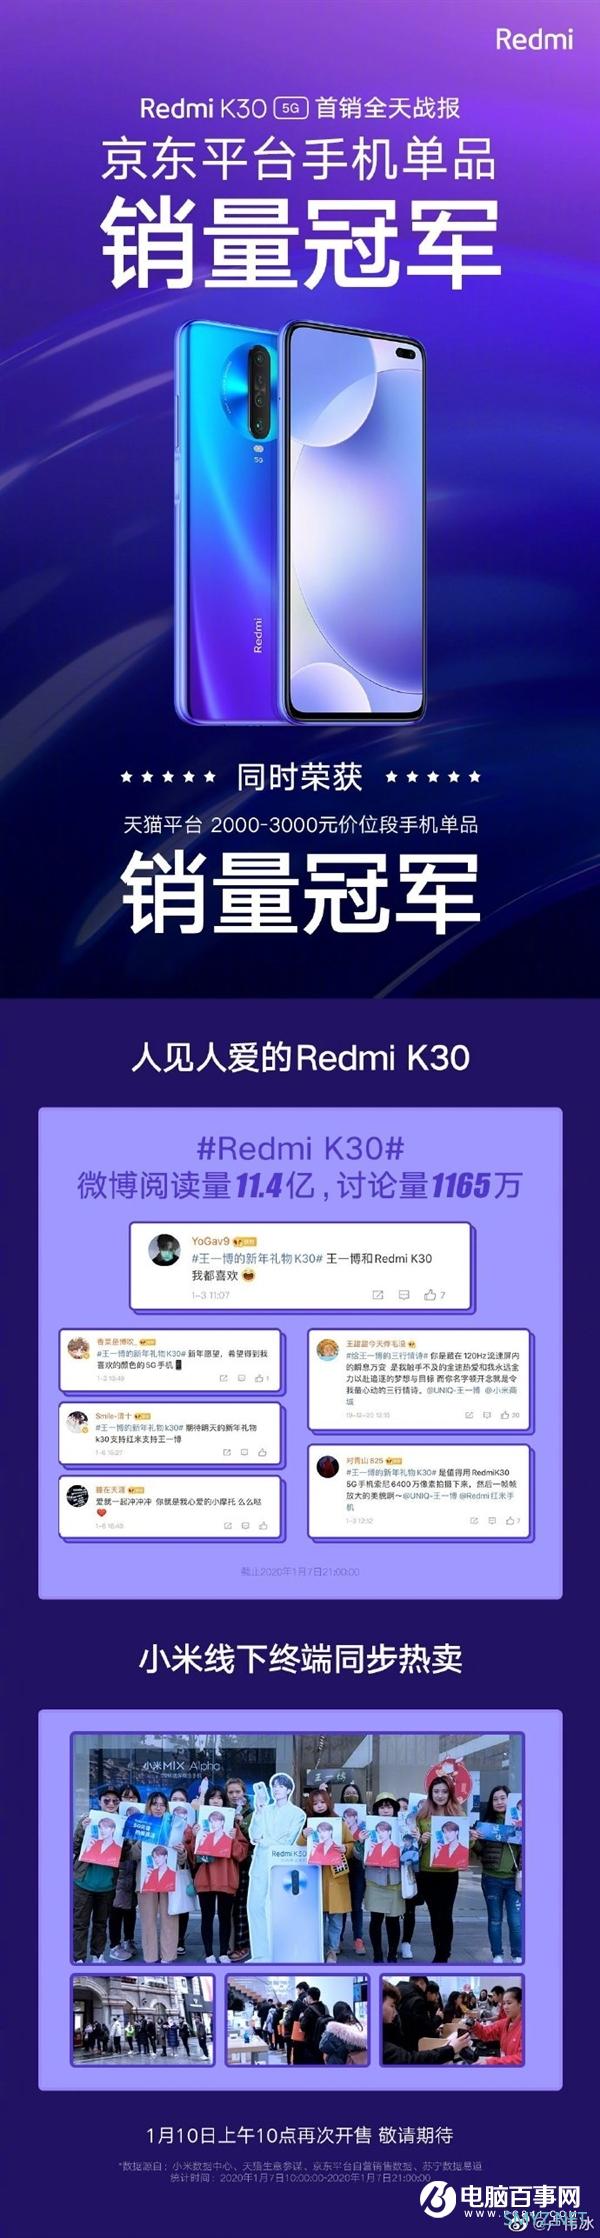 Redmi K30 5G首销获京东单品销量冠军：卢伟冰摆庆功宴